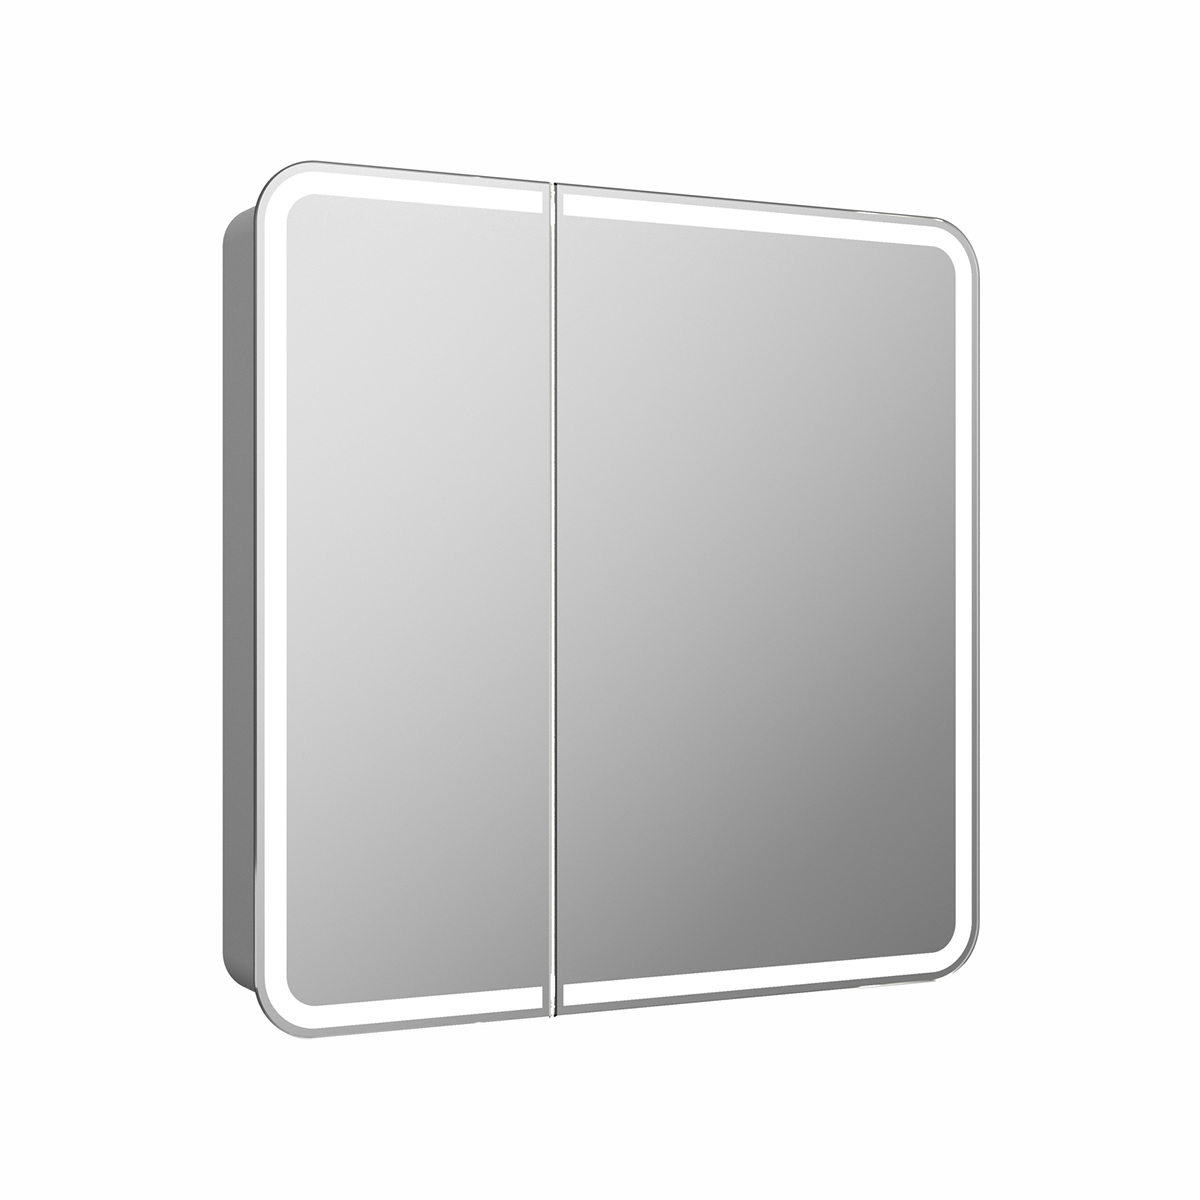 Шкаф зеркальный Continent Elliot 800x800 с LED подсветкой, датчик движения и розетка для эл.приборов